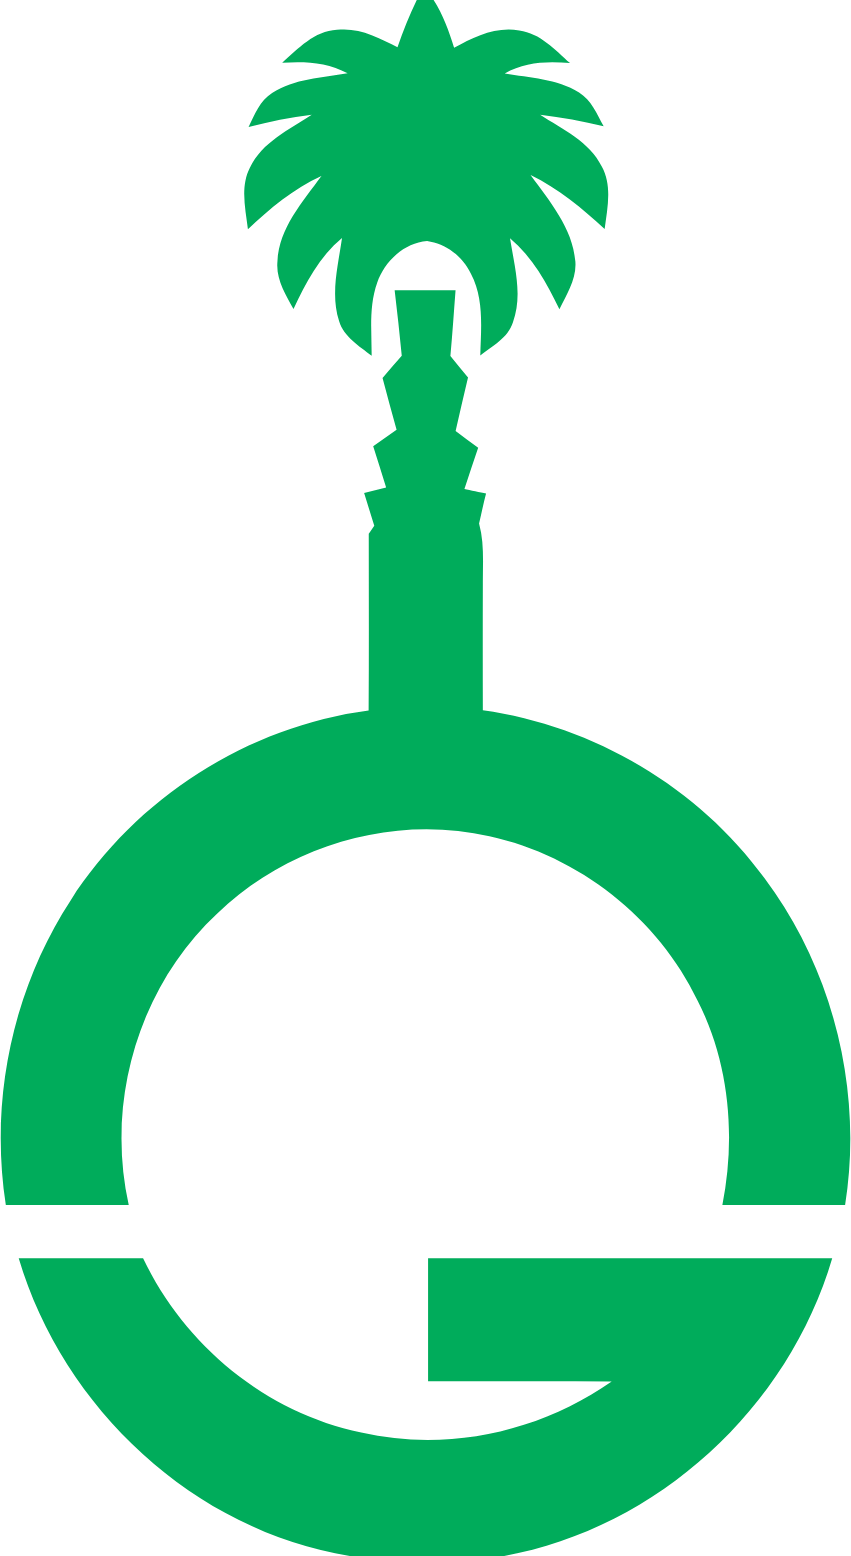 Kingdom Holding logo (PNG transparent)